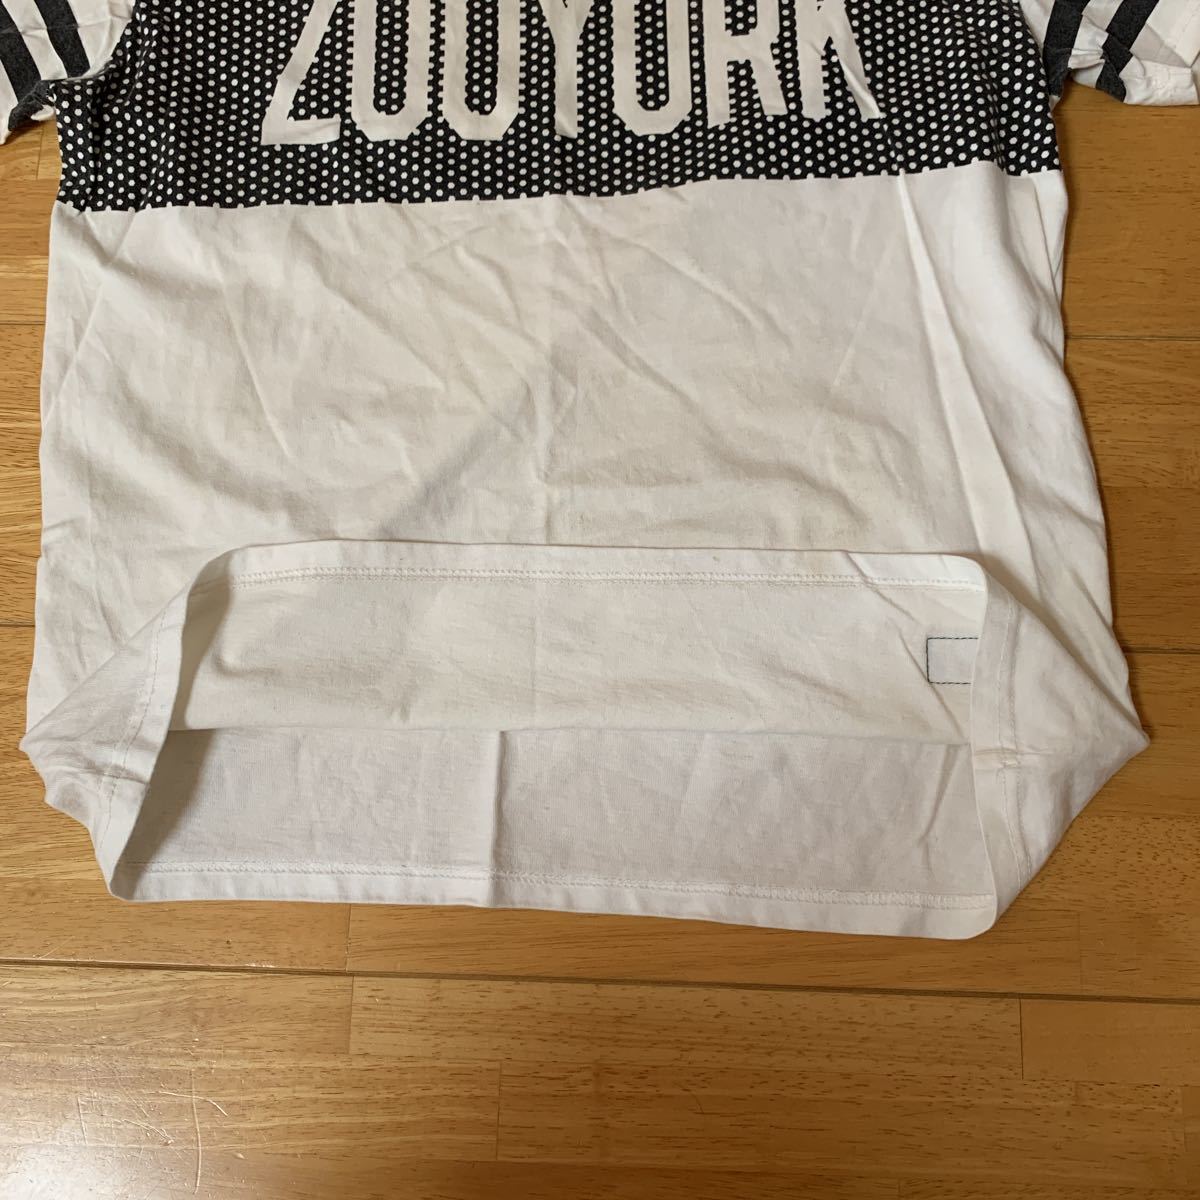 ZOO YORK ズーヨーク メンズ Tシャツ 綿 100% ホワイトMENS サイズ L 中古品 美品 送料無料_画像7